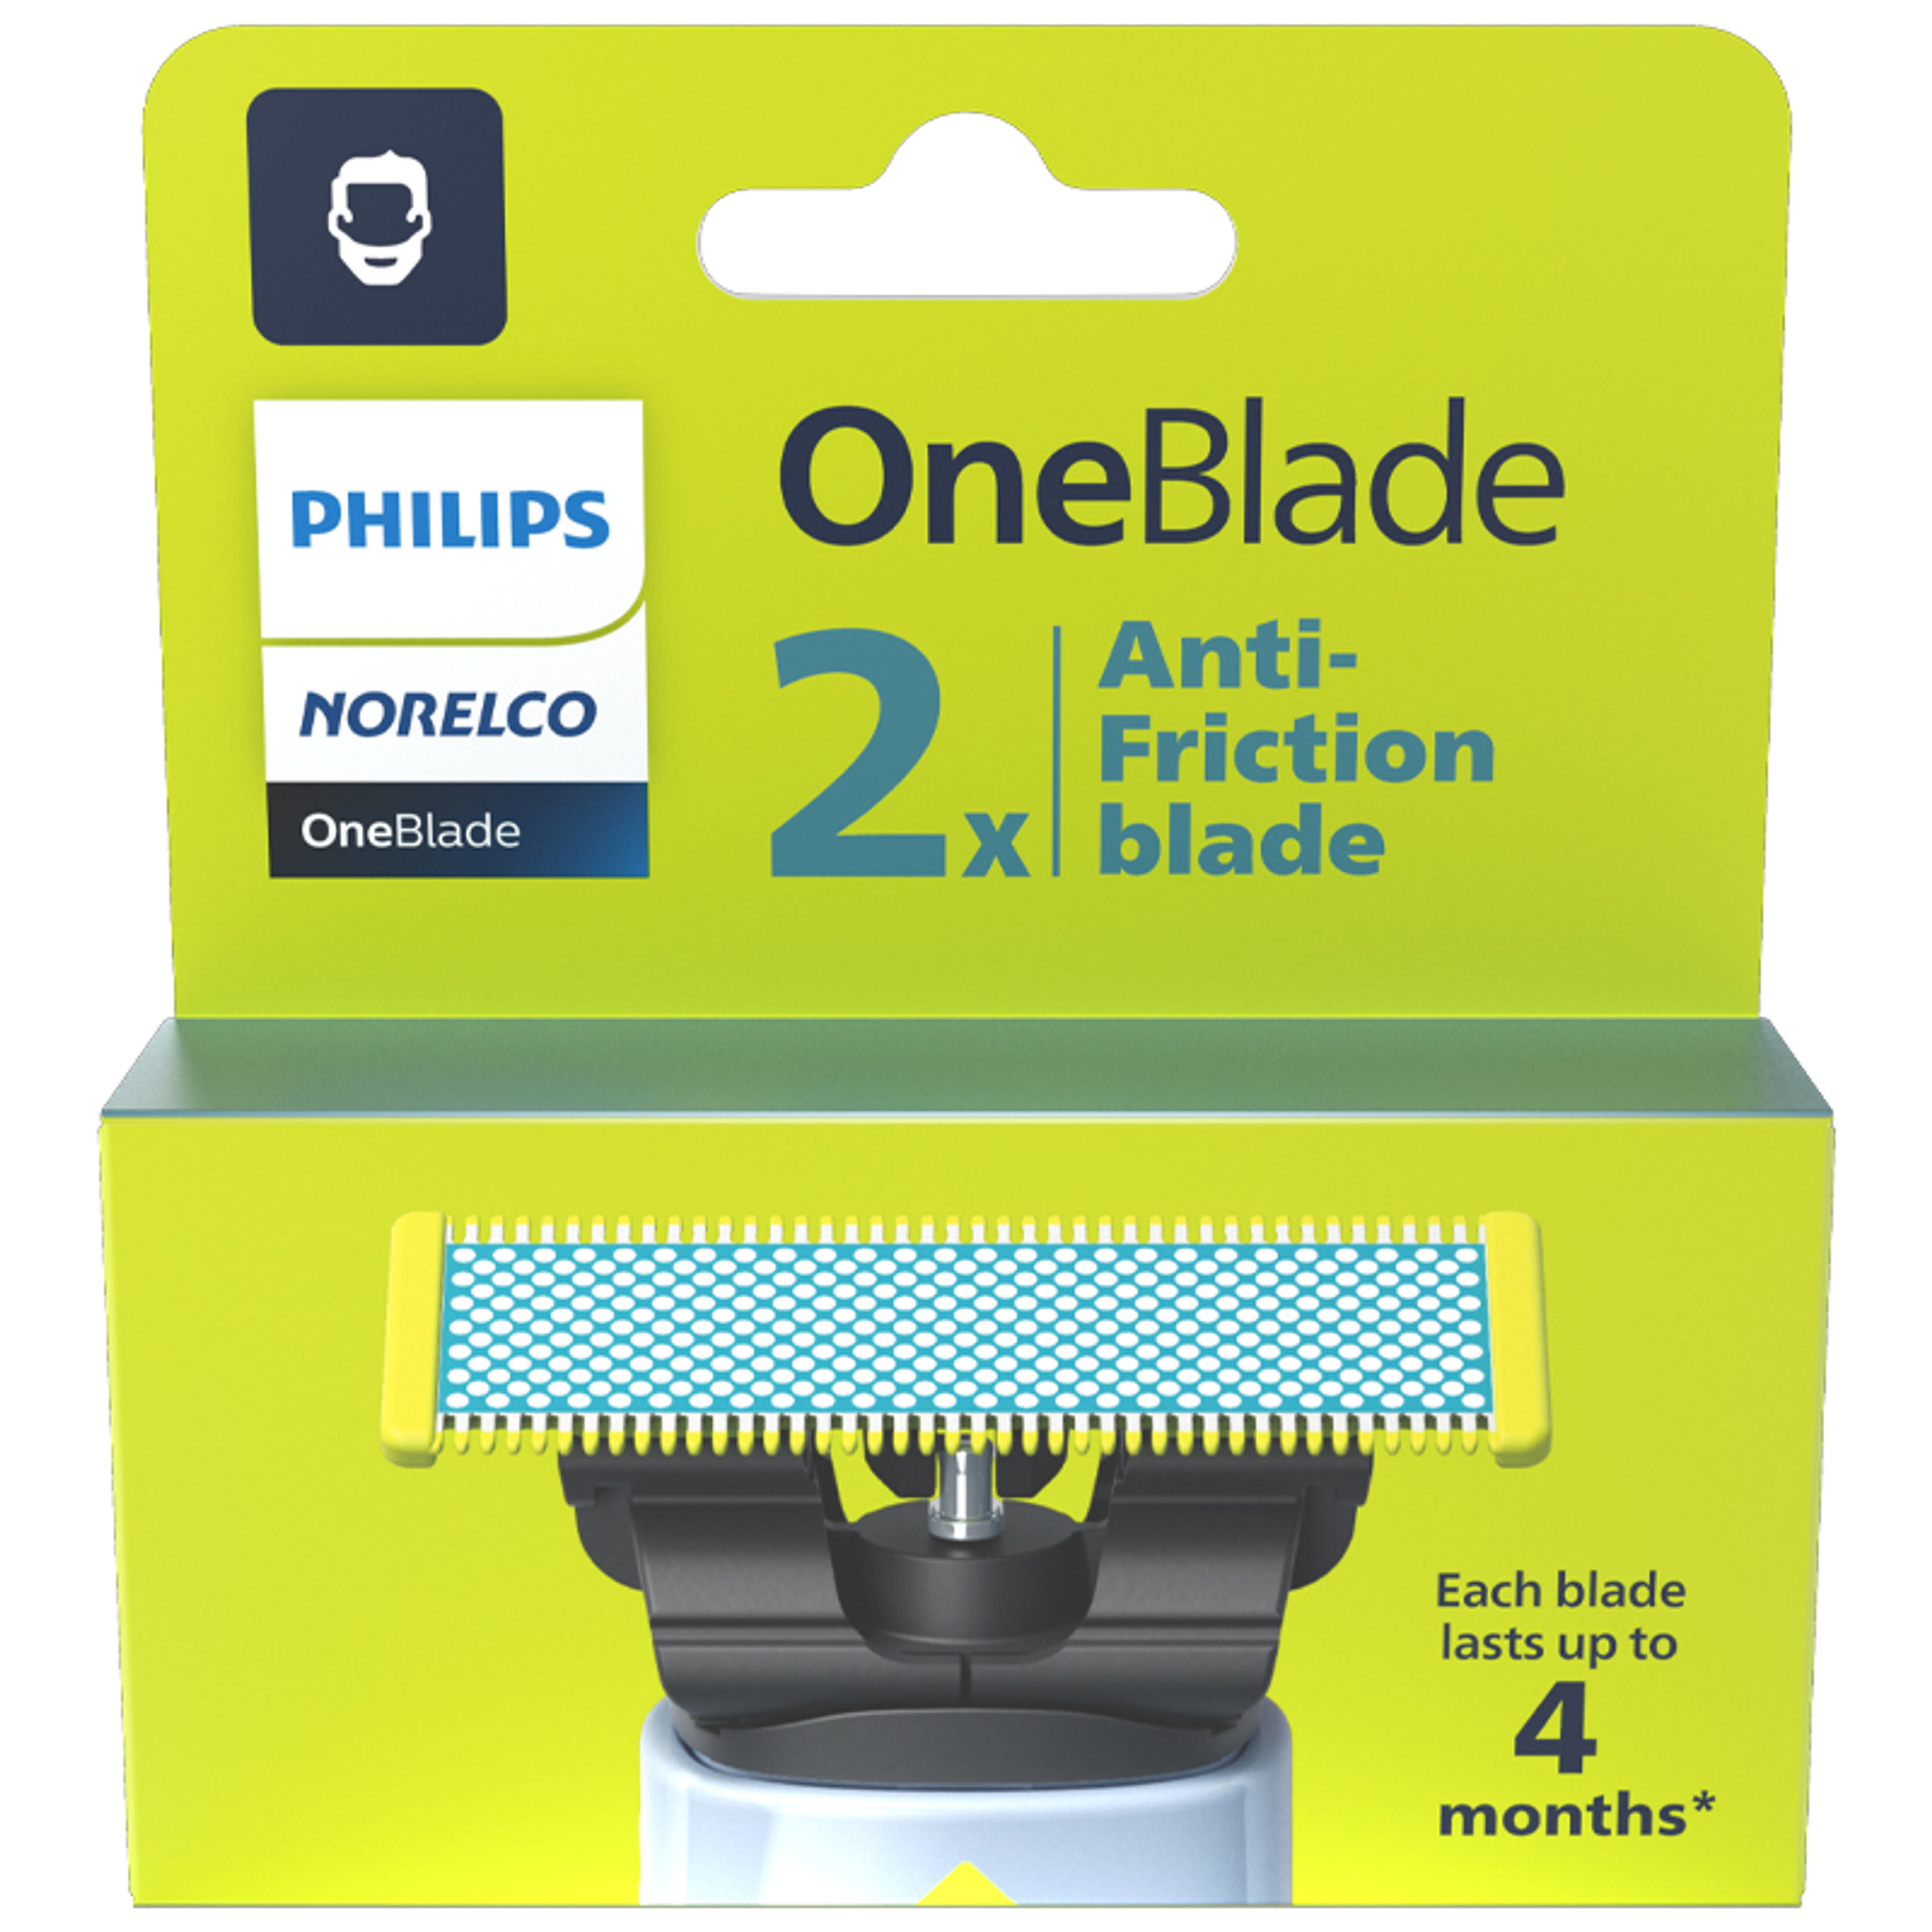 Philips OneBlade cserélhető anti-frikciós pengék - 2 db-2